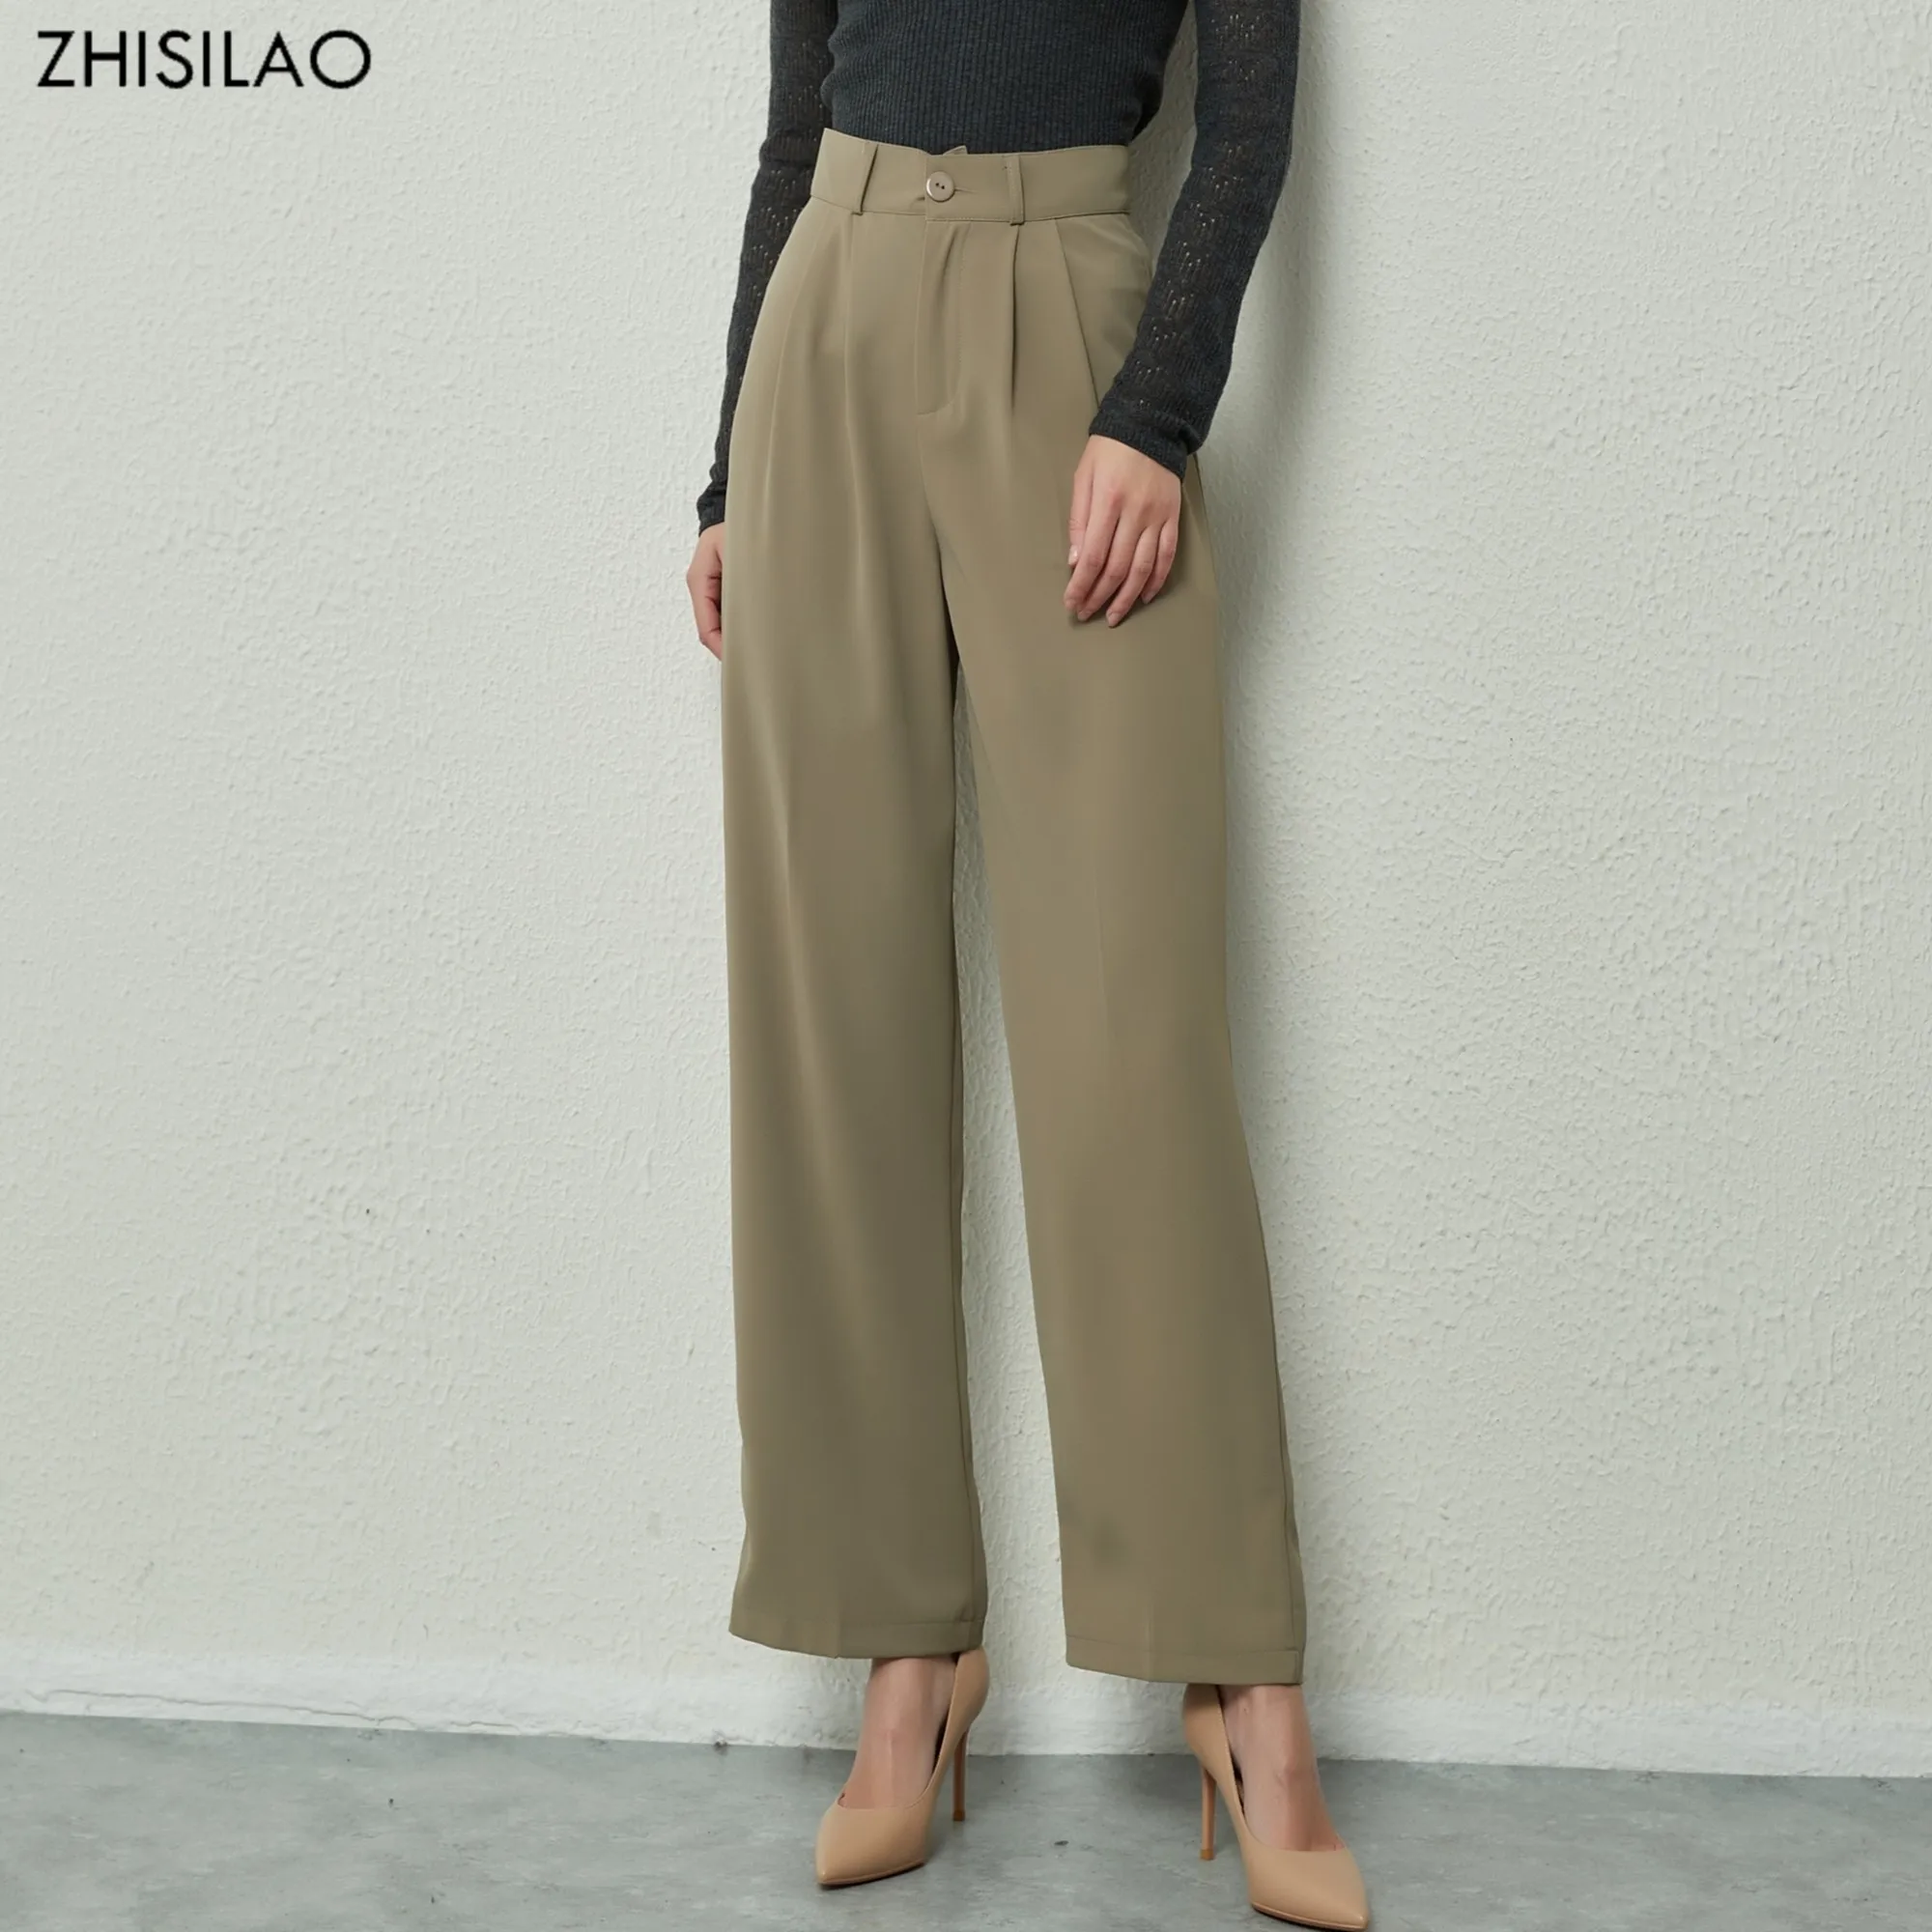 Pilt /59150/Zhisilao-uus-lai-jalg-sirge-püksid-elegantne-tahke-1_share/upload.jpeg